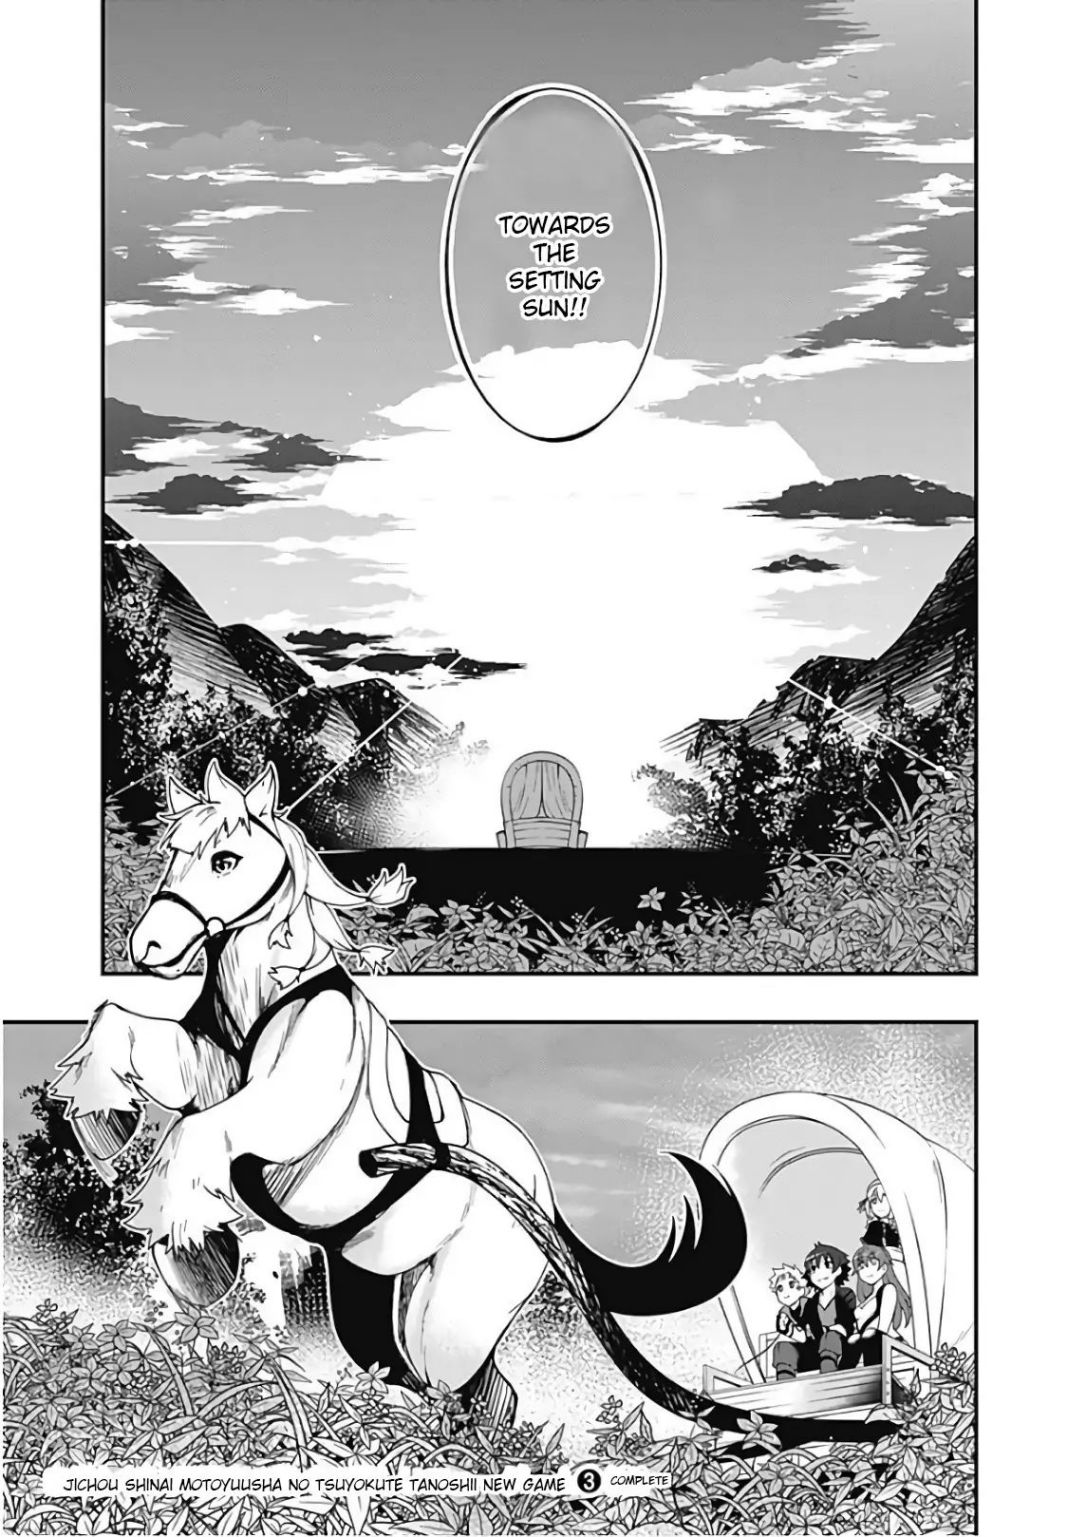 Jichou Shinai Motoyuusha No Tsuyokute Tanoshii New Game Chapter 34 - Page 16